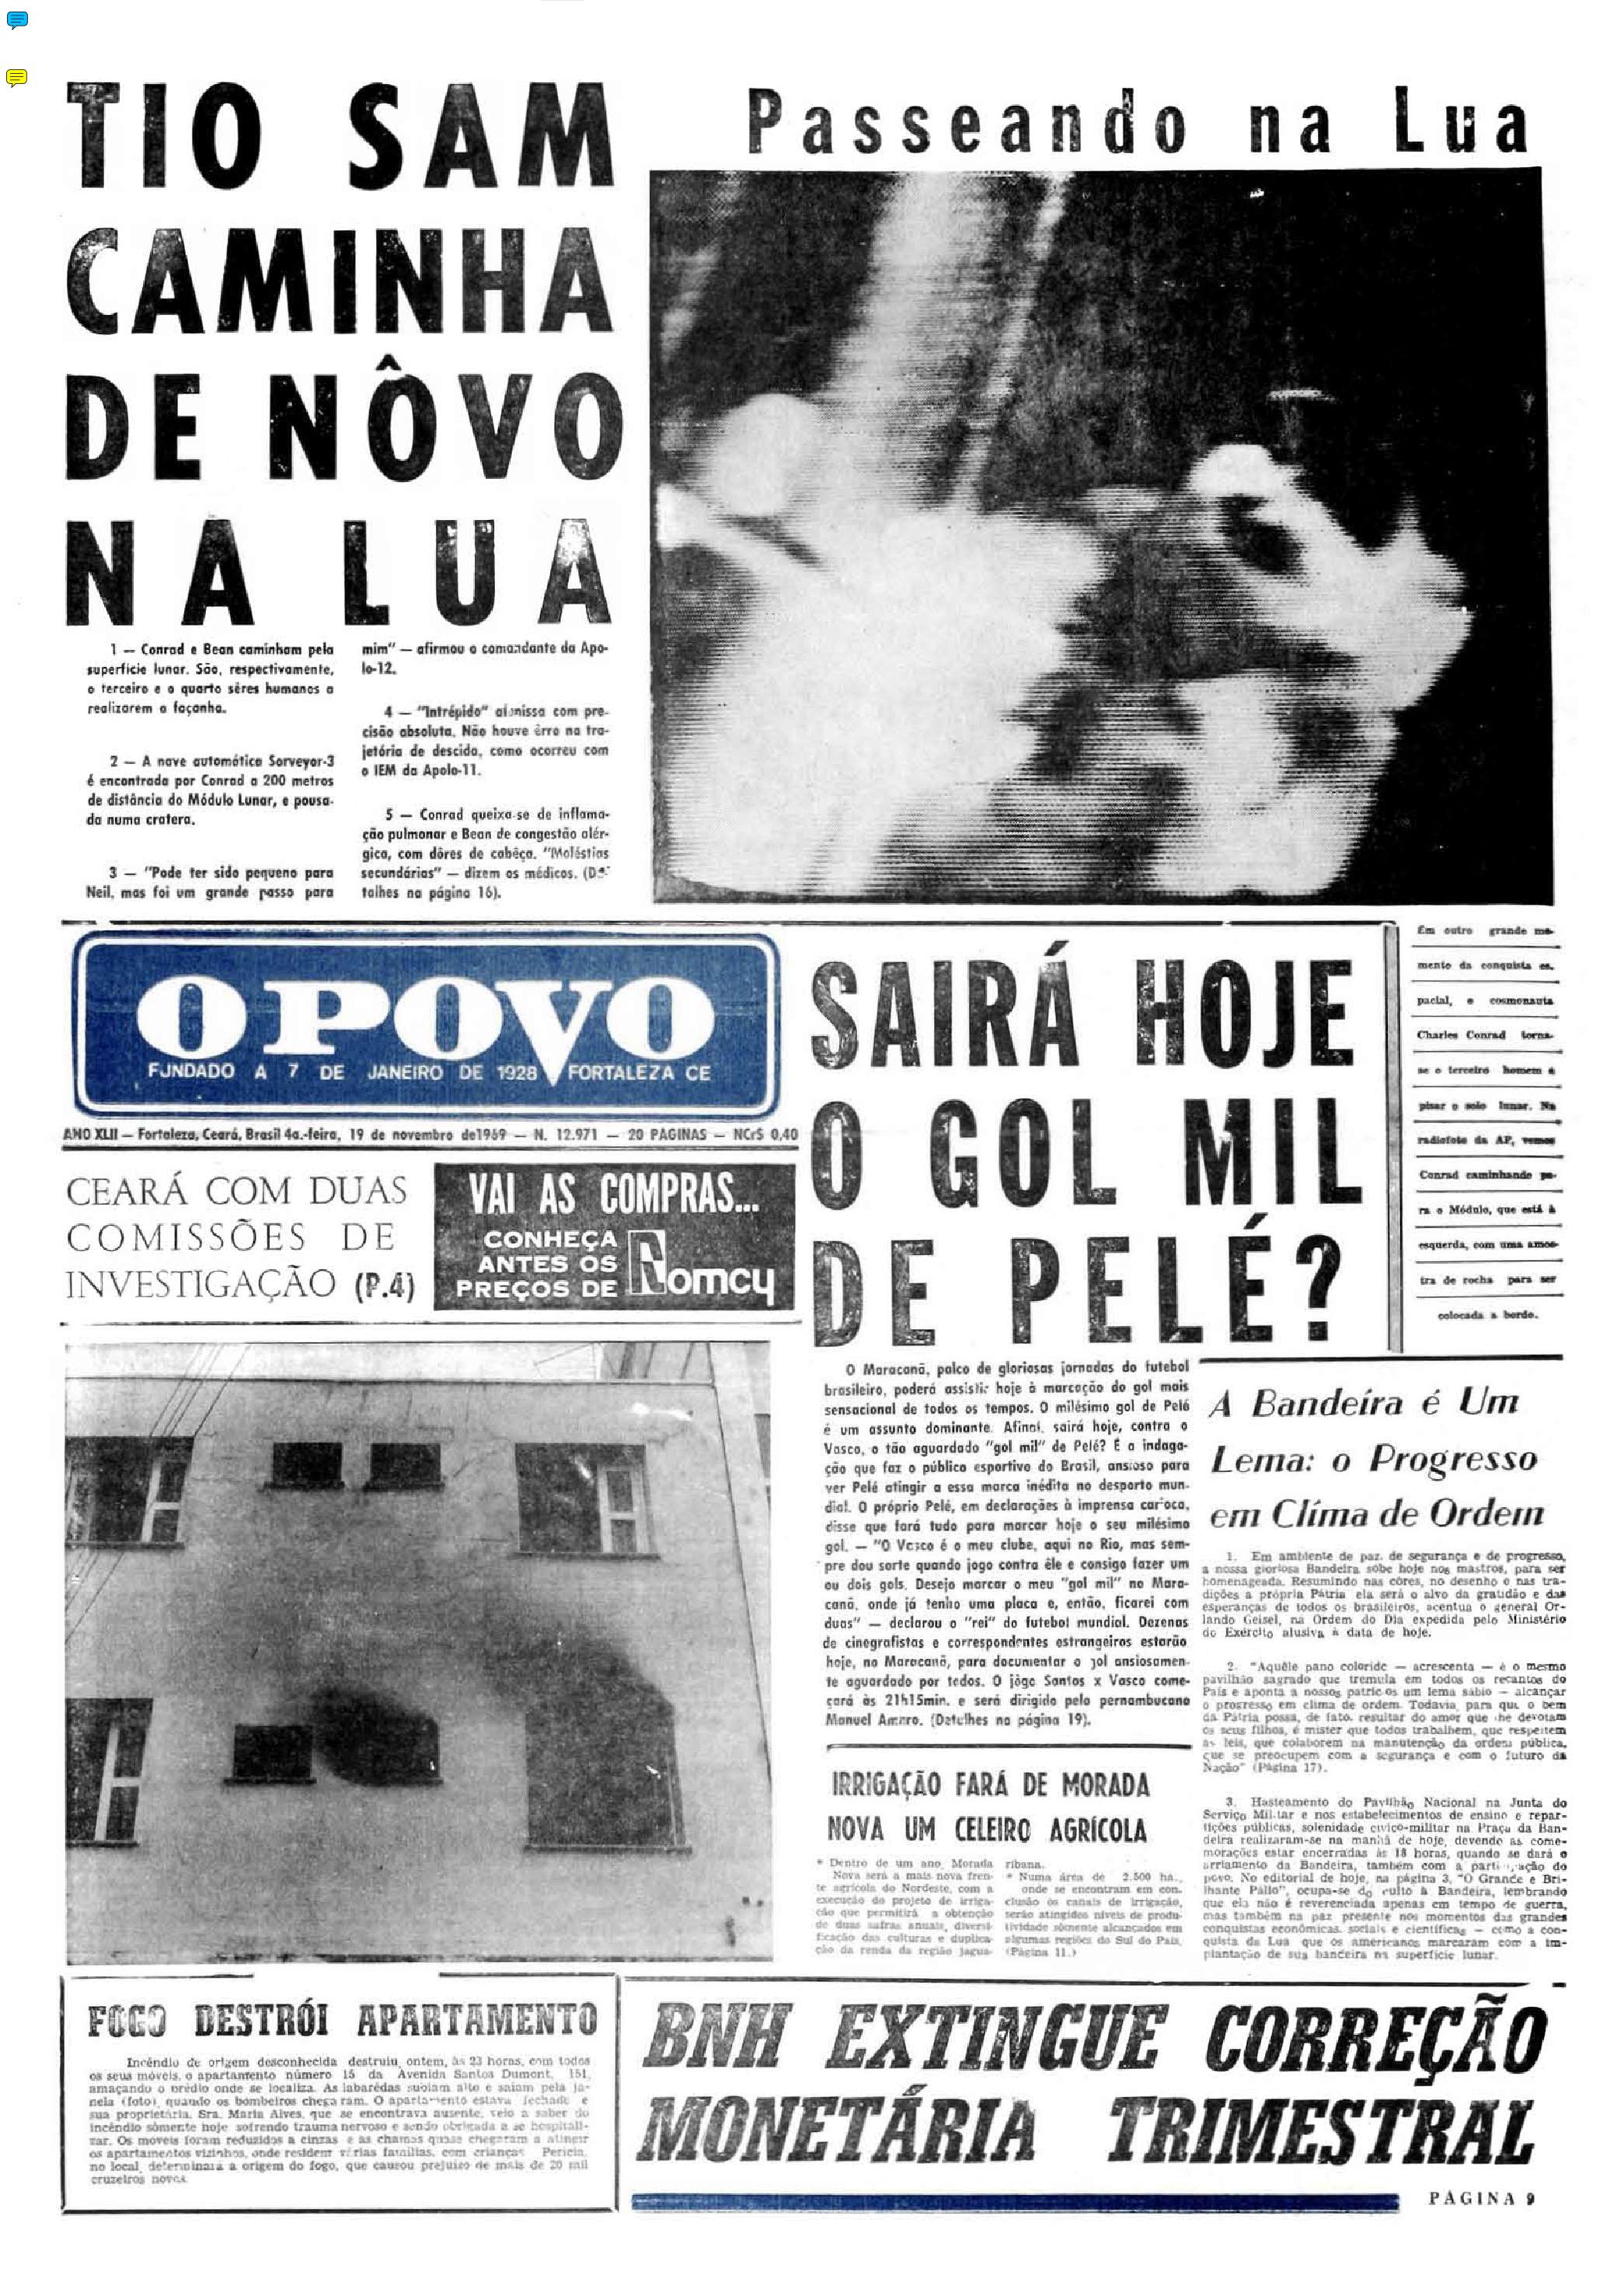 Pelé 80 anos: 19 de novembro de 1969 - Capa do O POVO destaca a expectativa para o gol 1.000(Foto: Acervo O POVO)